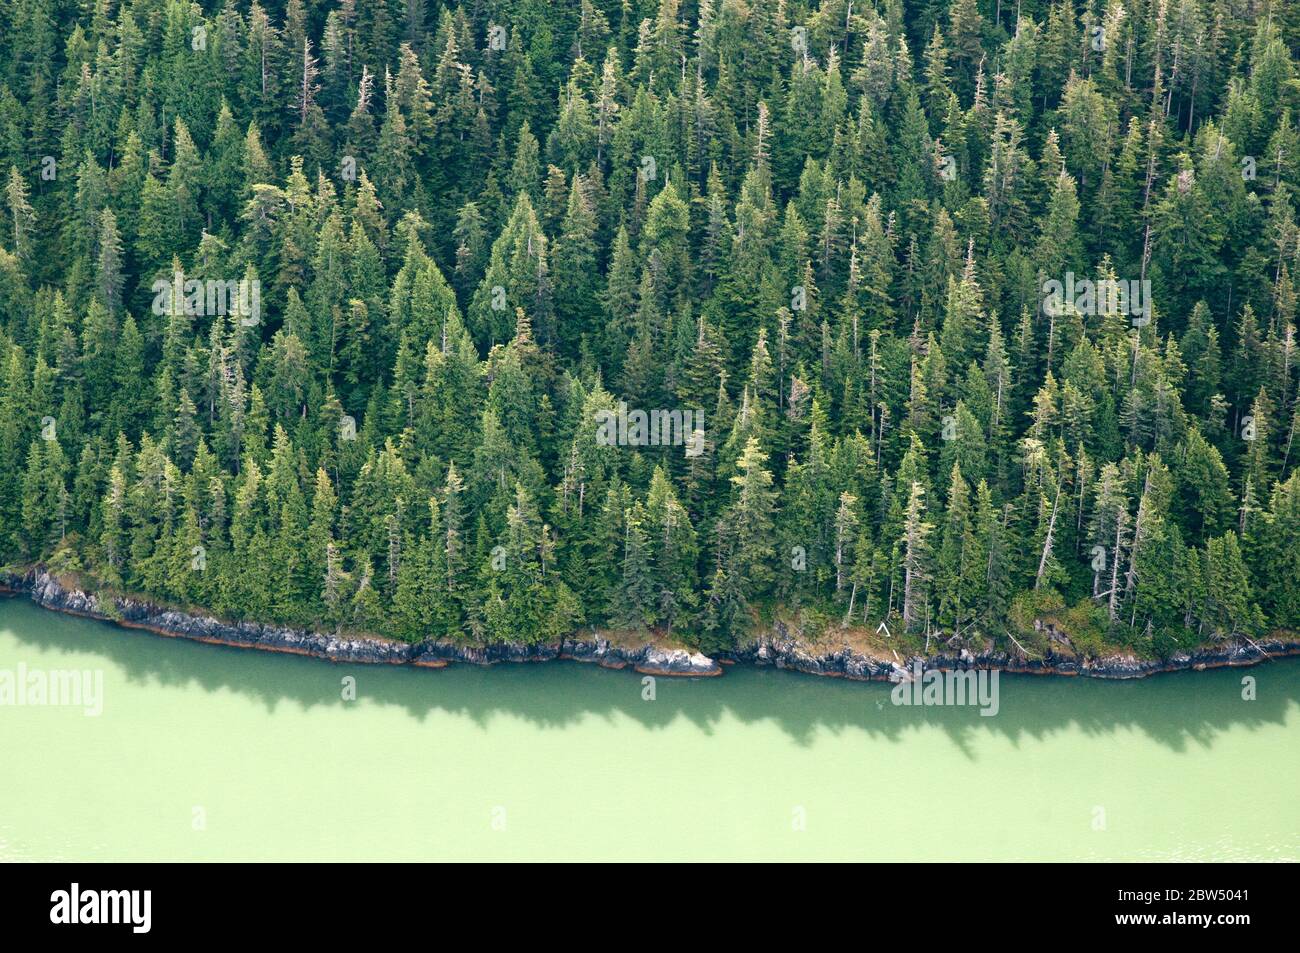 Vista aérea de las aguas llenas de sedimentos glaciales de Rivers Inlet, en el bosque tropical Great Bear, costa central del Pacífico de British Columbia, Canadá. Foto de stock